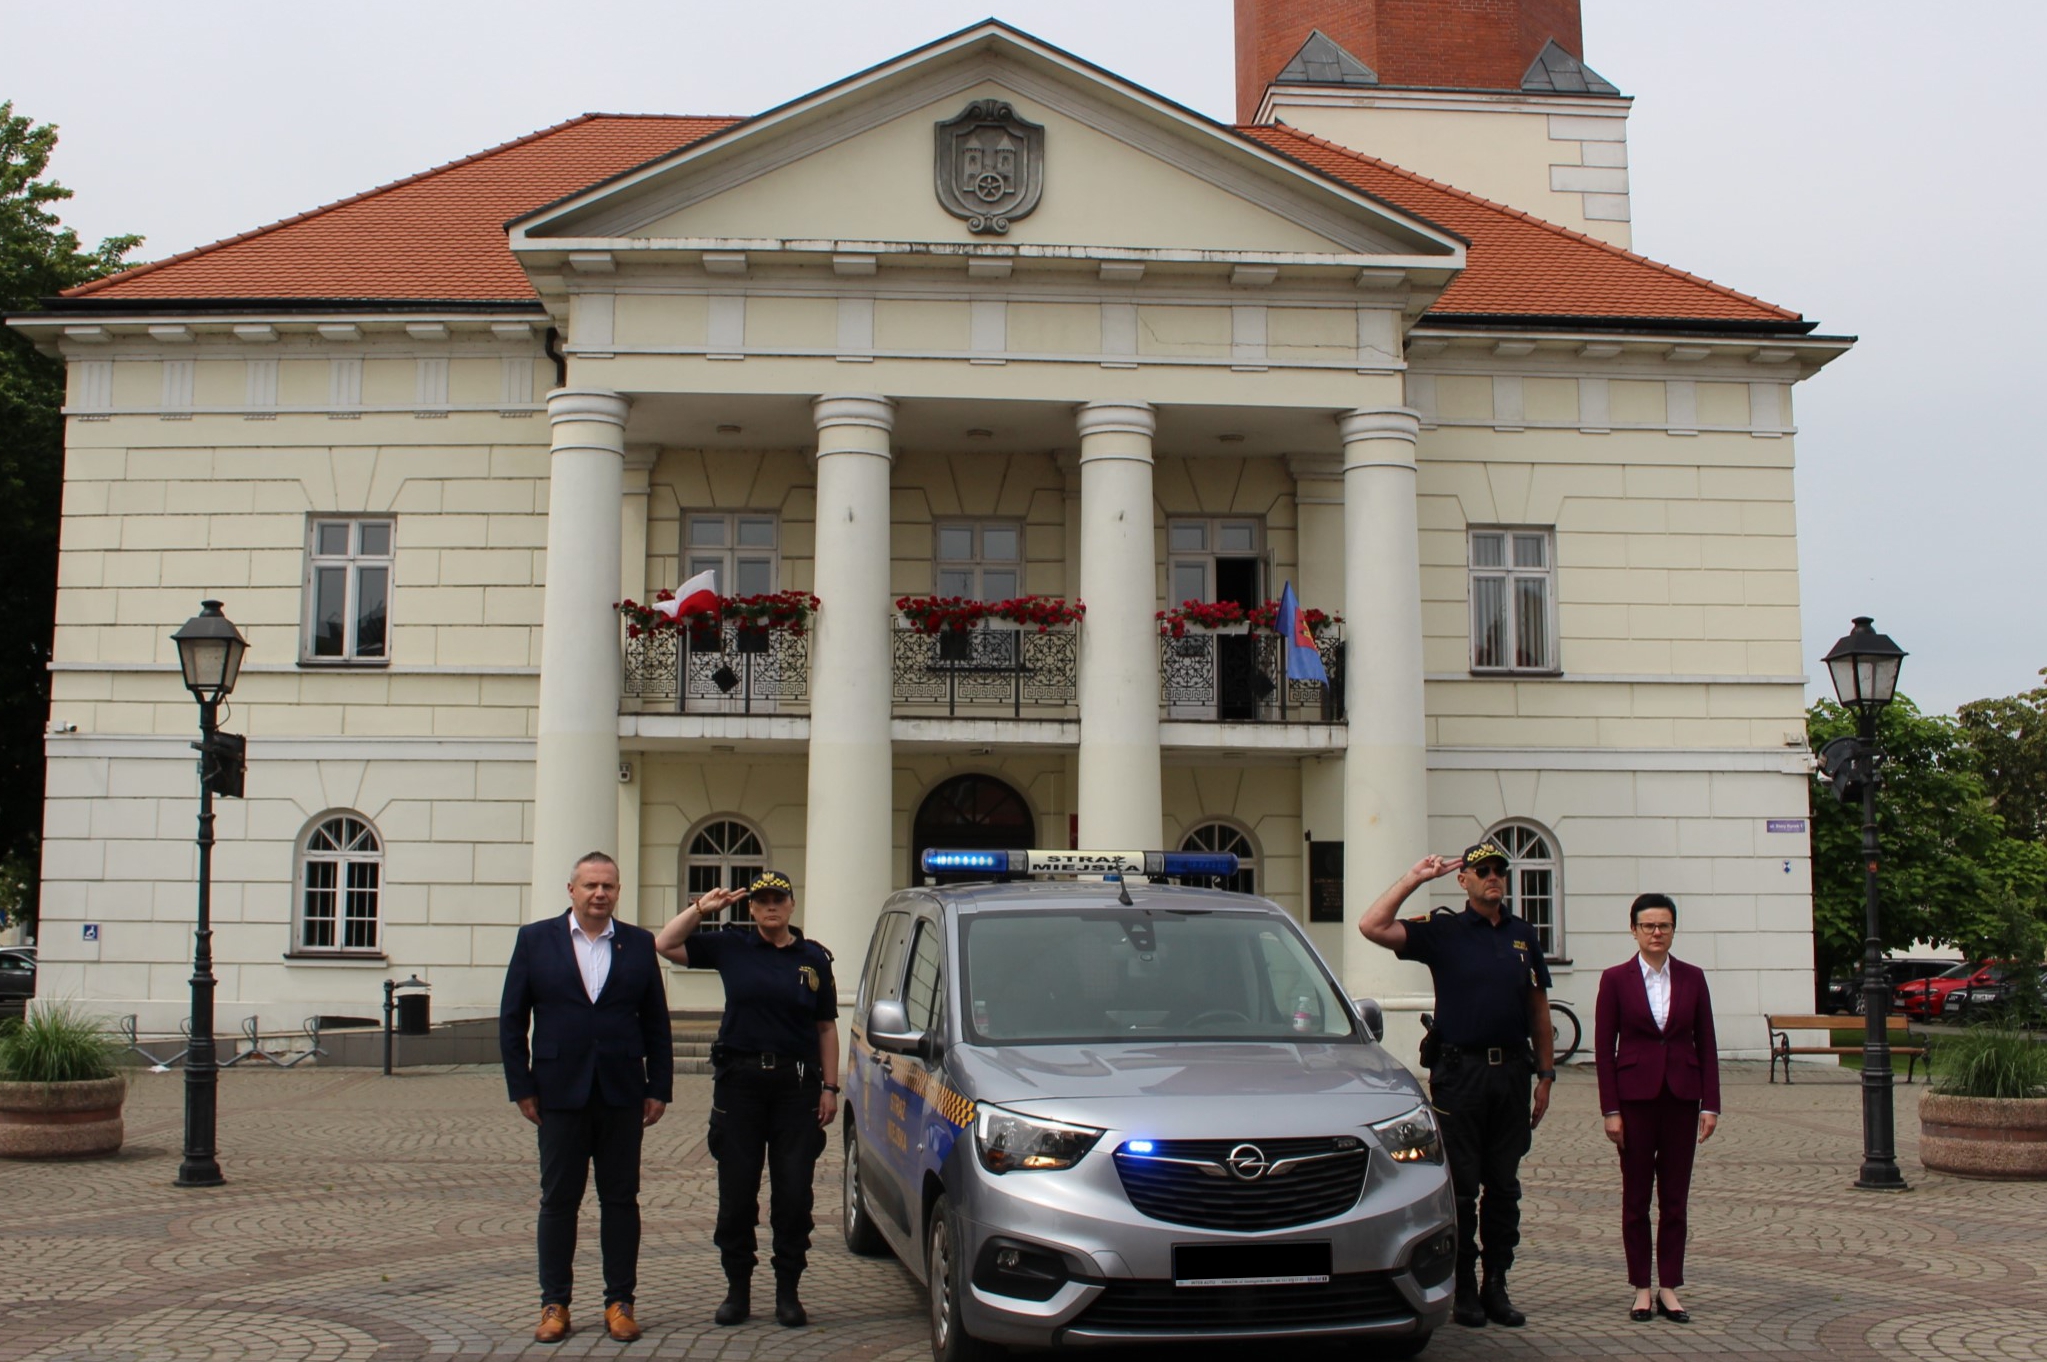 Burmistrz Koła Krzysztof Witkowski, Z-ca Monika Ciesielska i strażnicy miejscy oddają hołd zmarłemu 